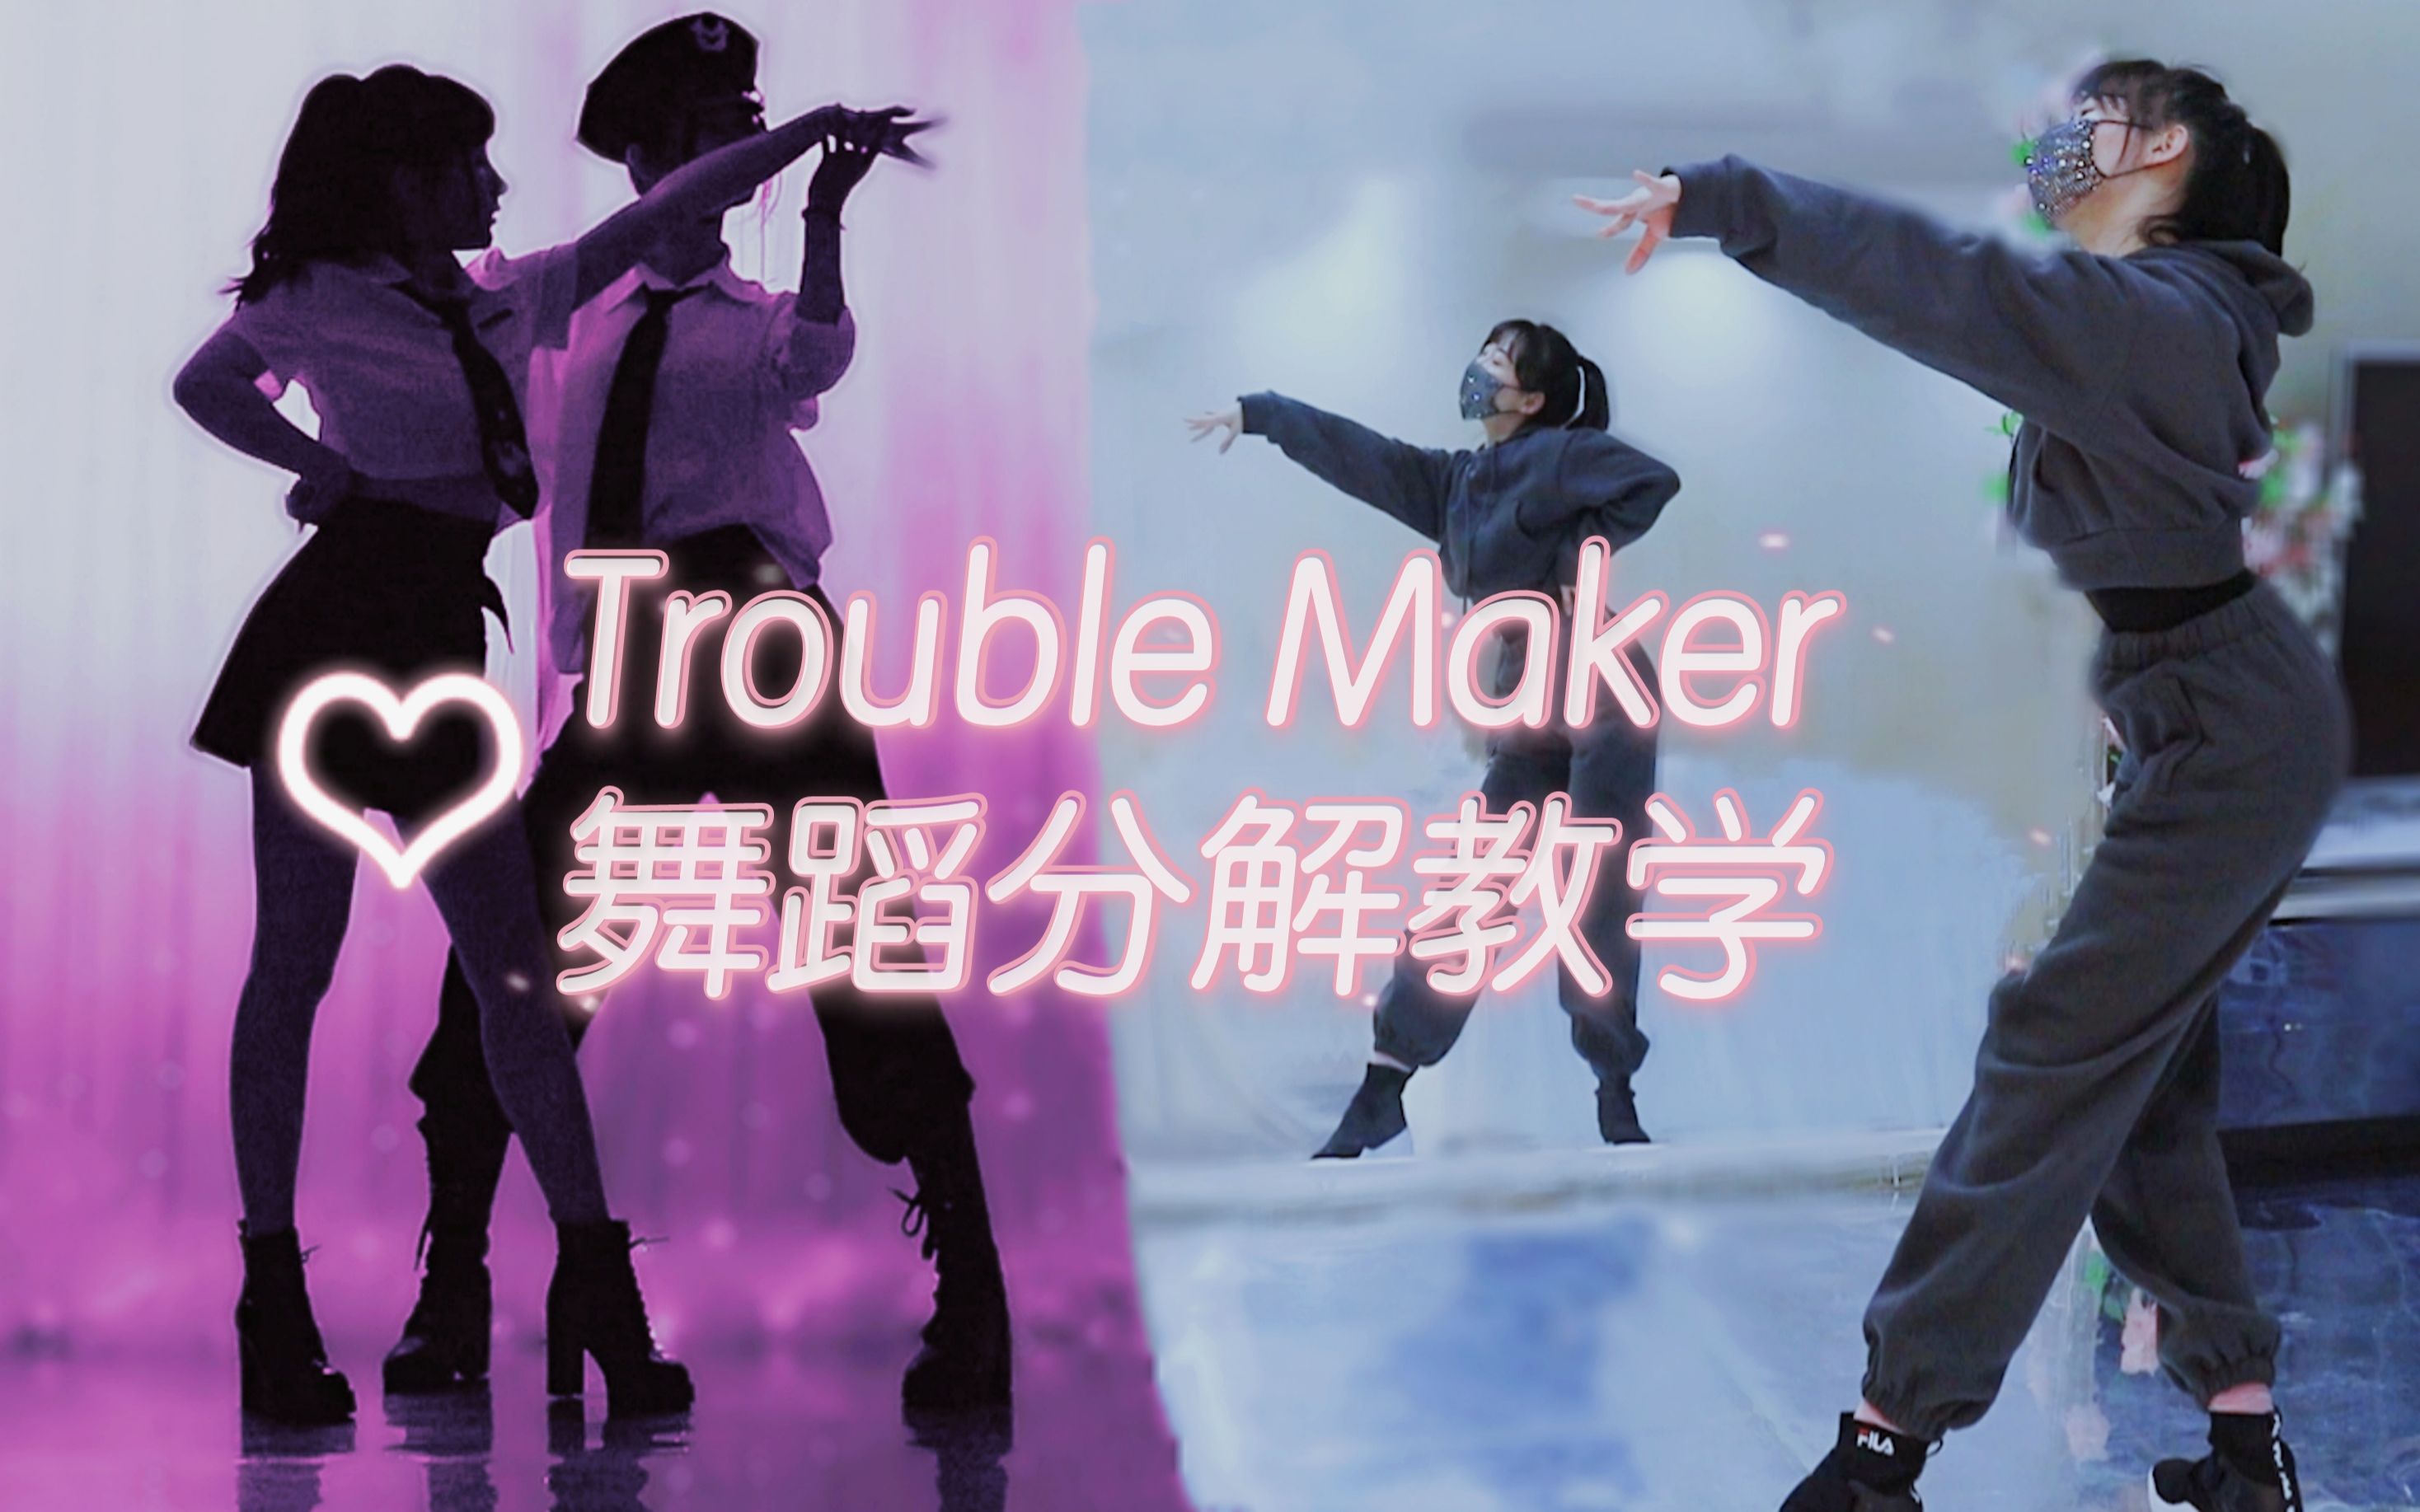 经典双人舞《Trouble Maker》舞蹈分解教学【紫嘉儿+春几】